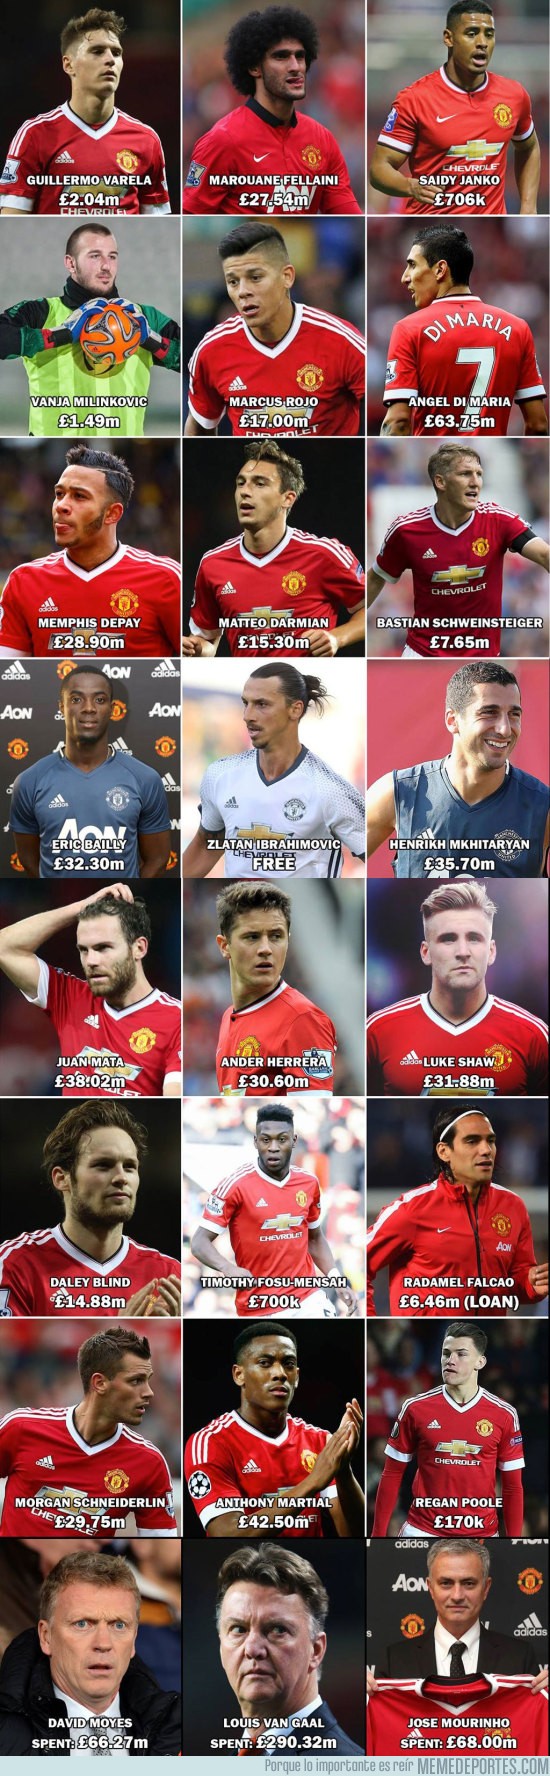 894370 - El Manchester United ha gastado £424.59 millones desde que se fue Ferguson